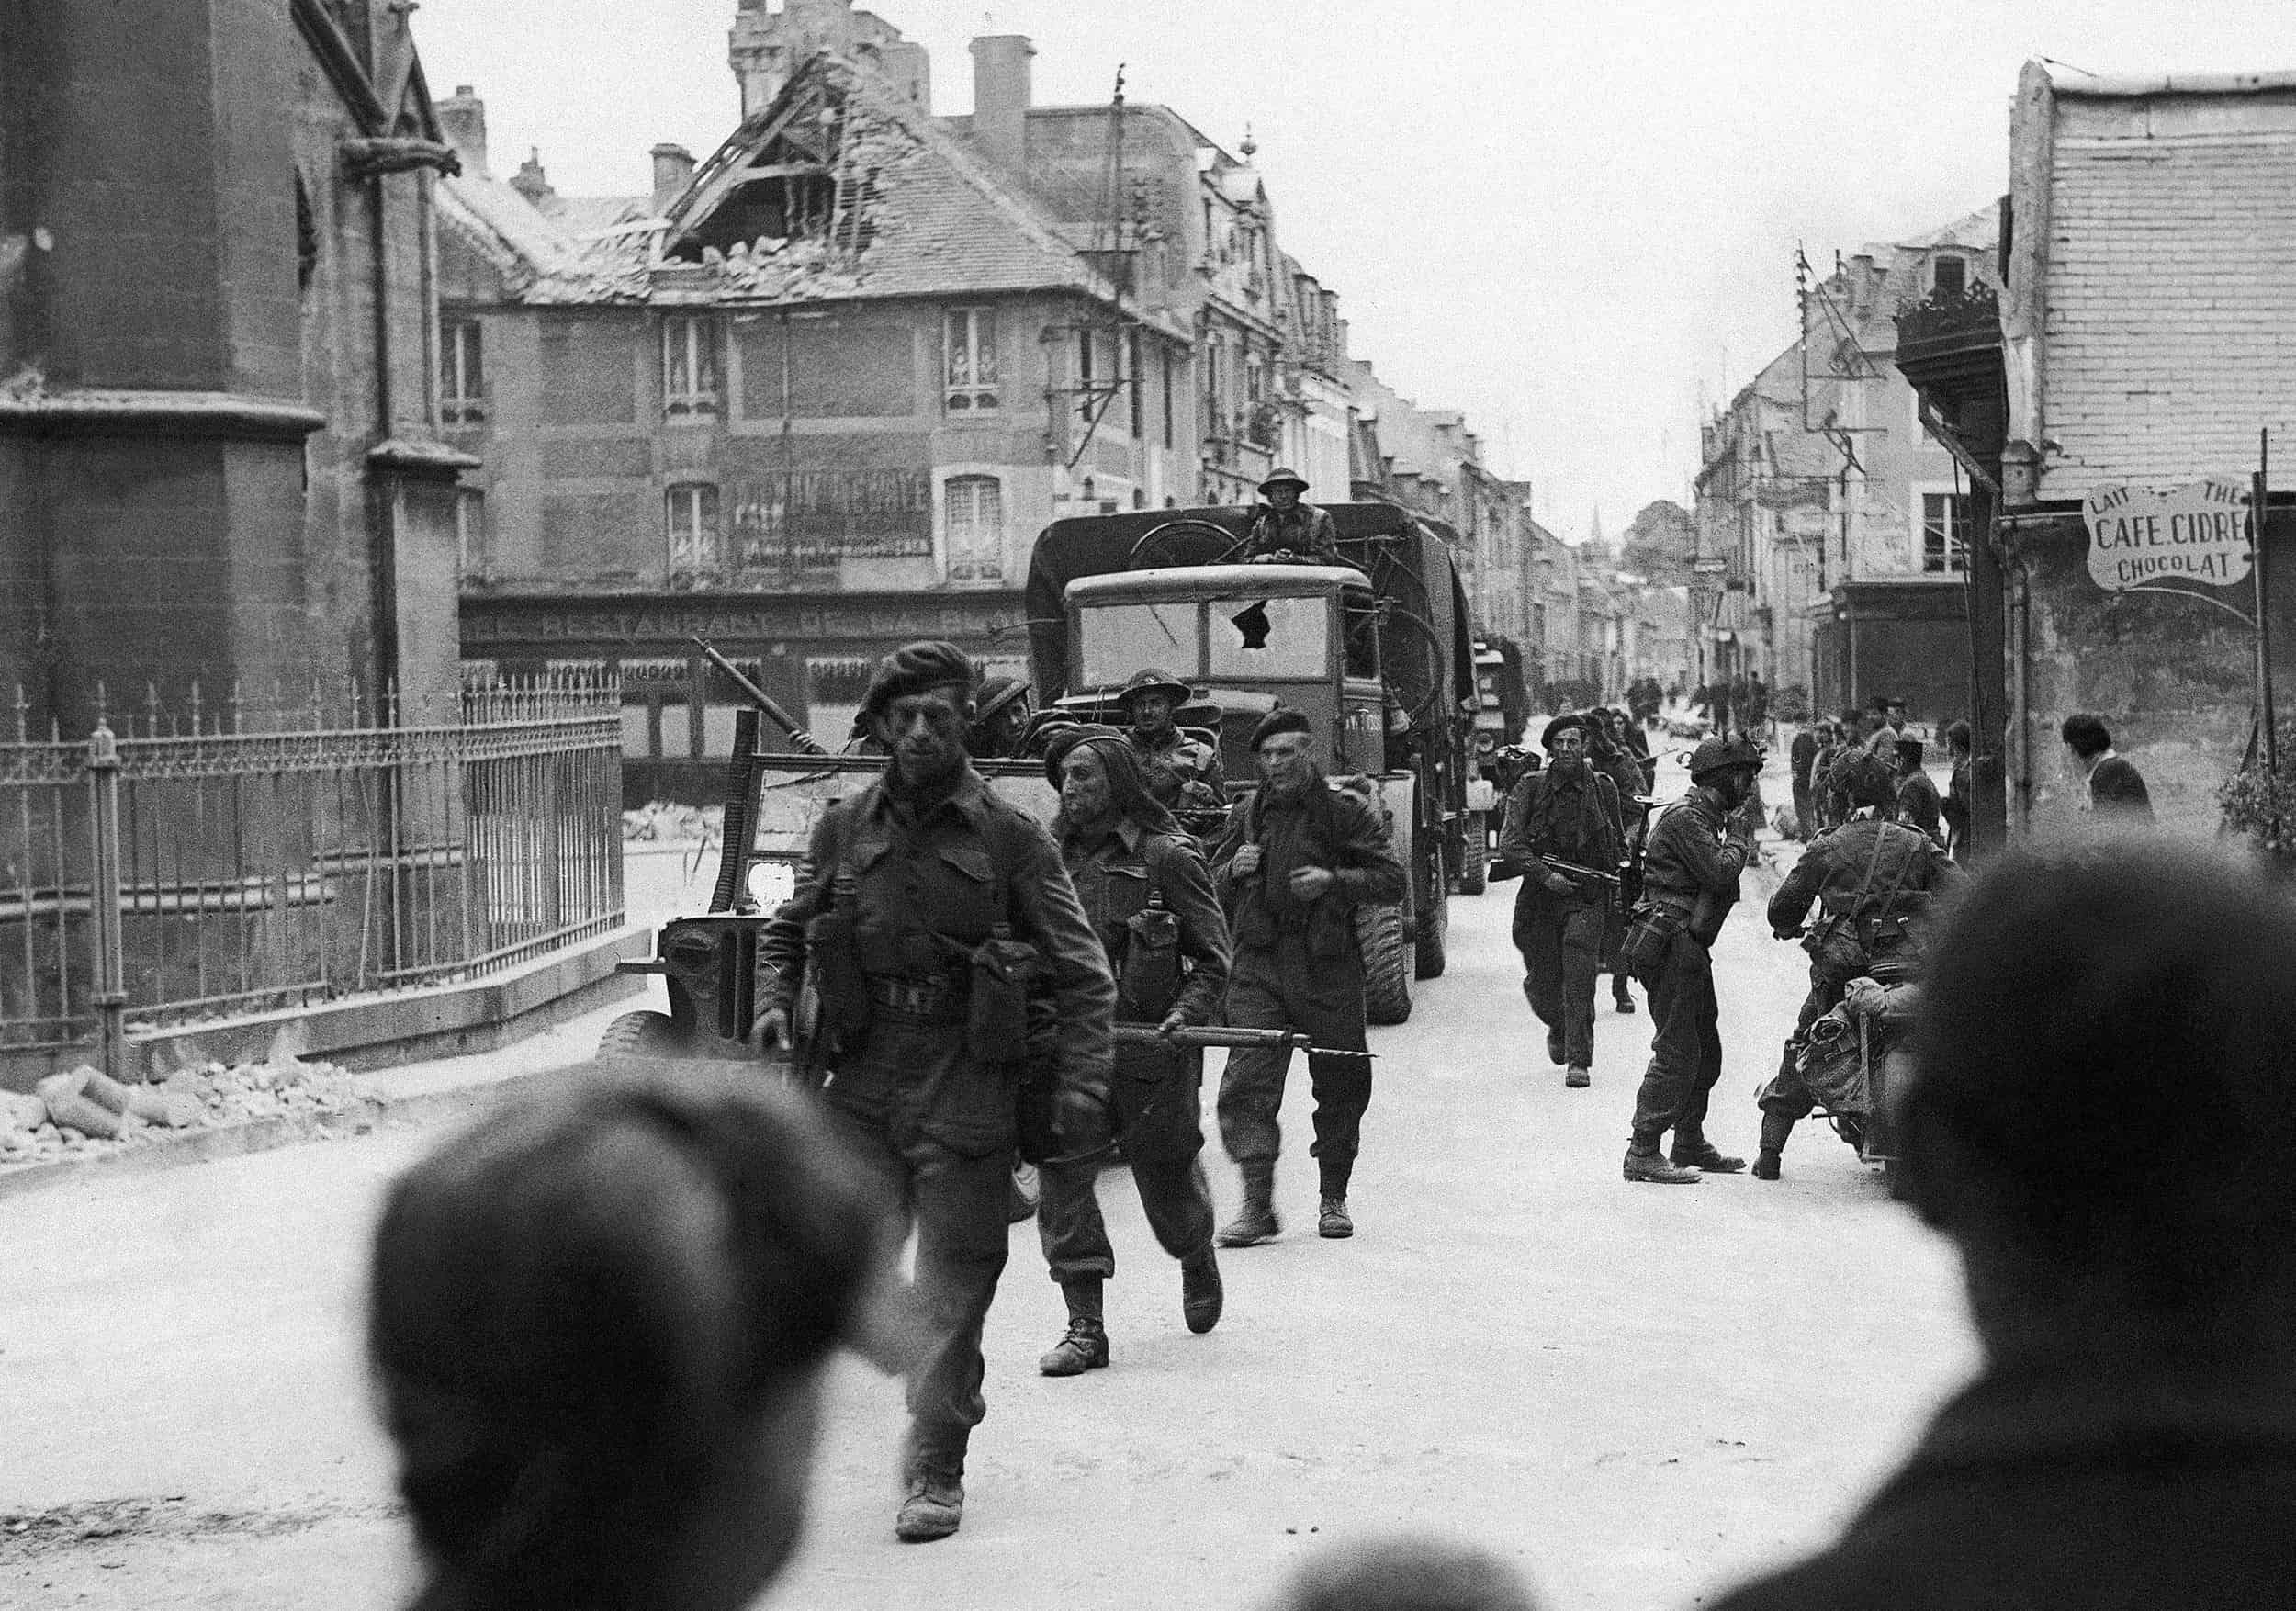 ARCHIVO - Comandos británicos pasan por las calles de una ciudad cerca de Caen, en Normandía, Francia, el 6 de junio de 1944. Tras los desembarcos iniciales en la costa francesa, las tropas aliadas inmediatamente comenzaron a avanzar hacia el interior. Al pasar por los pueblos de Normandía, sus habitantes les dieron una cálida bienvenida.